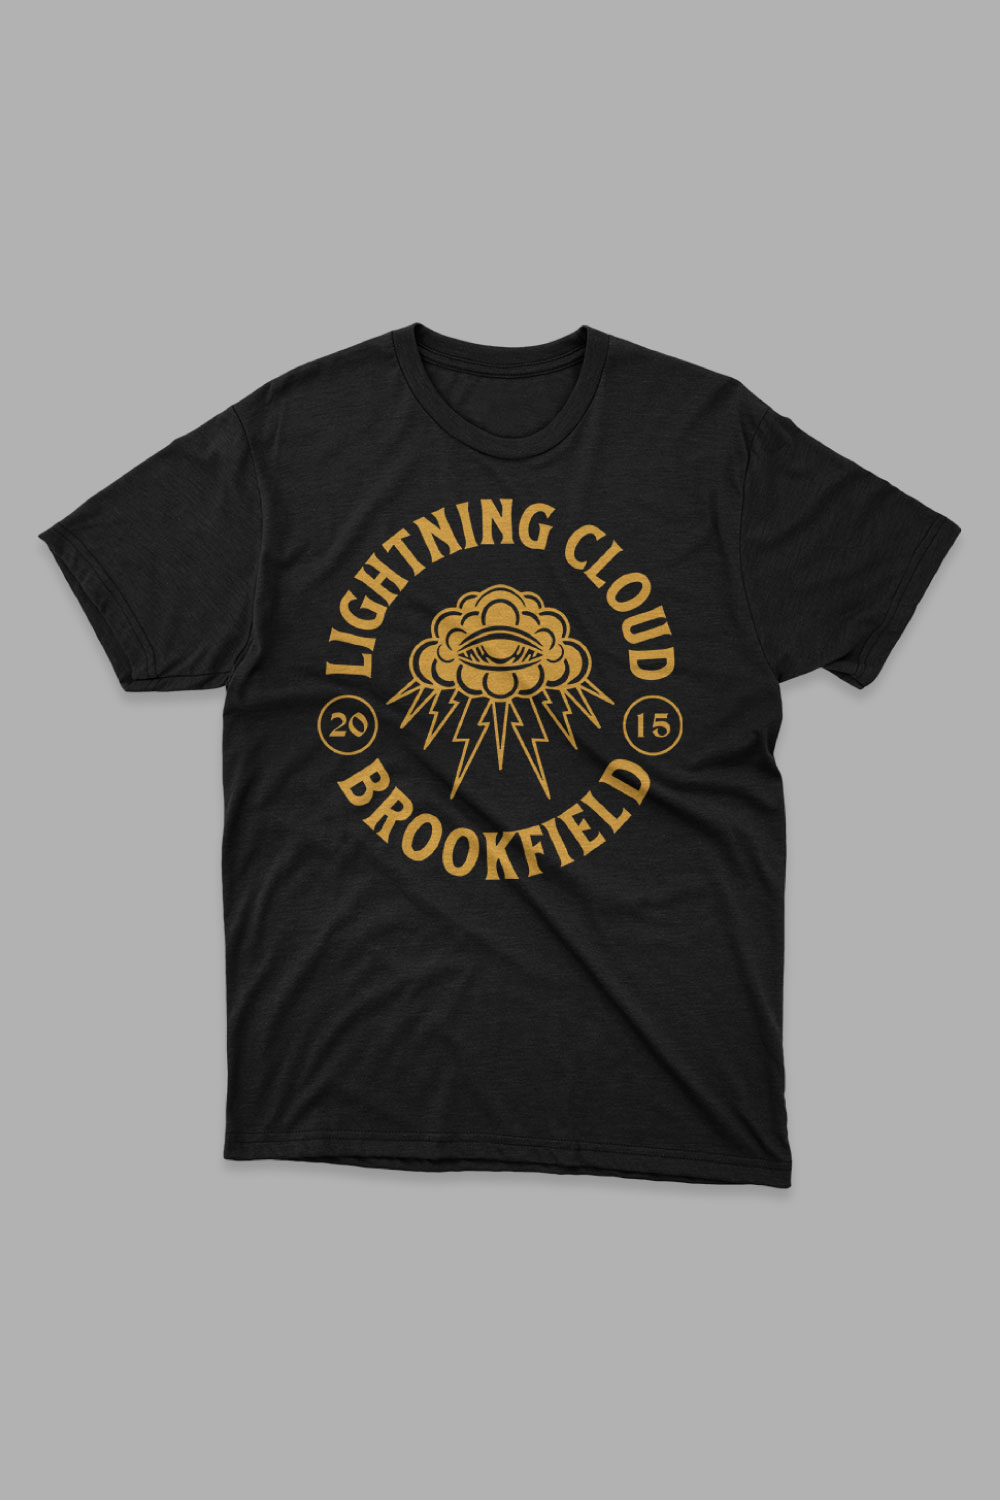 Lightning Cloud Brookfield T Shirt Design pinterest preview image.